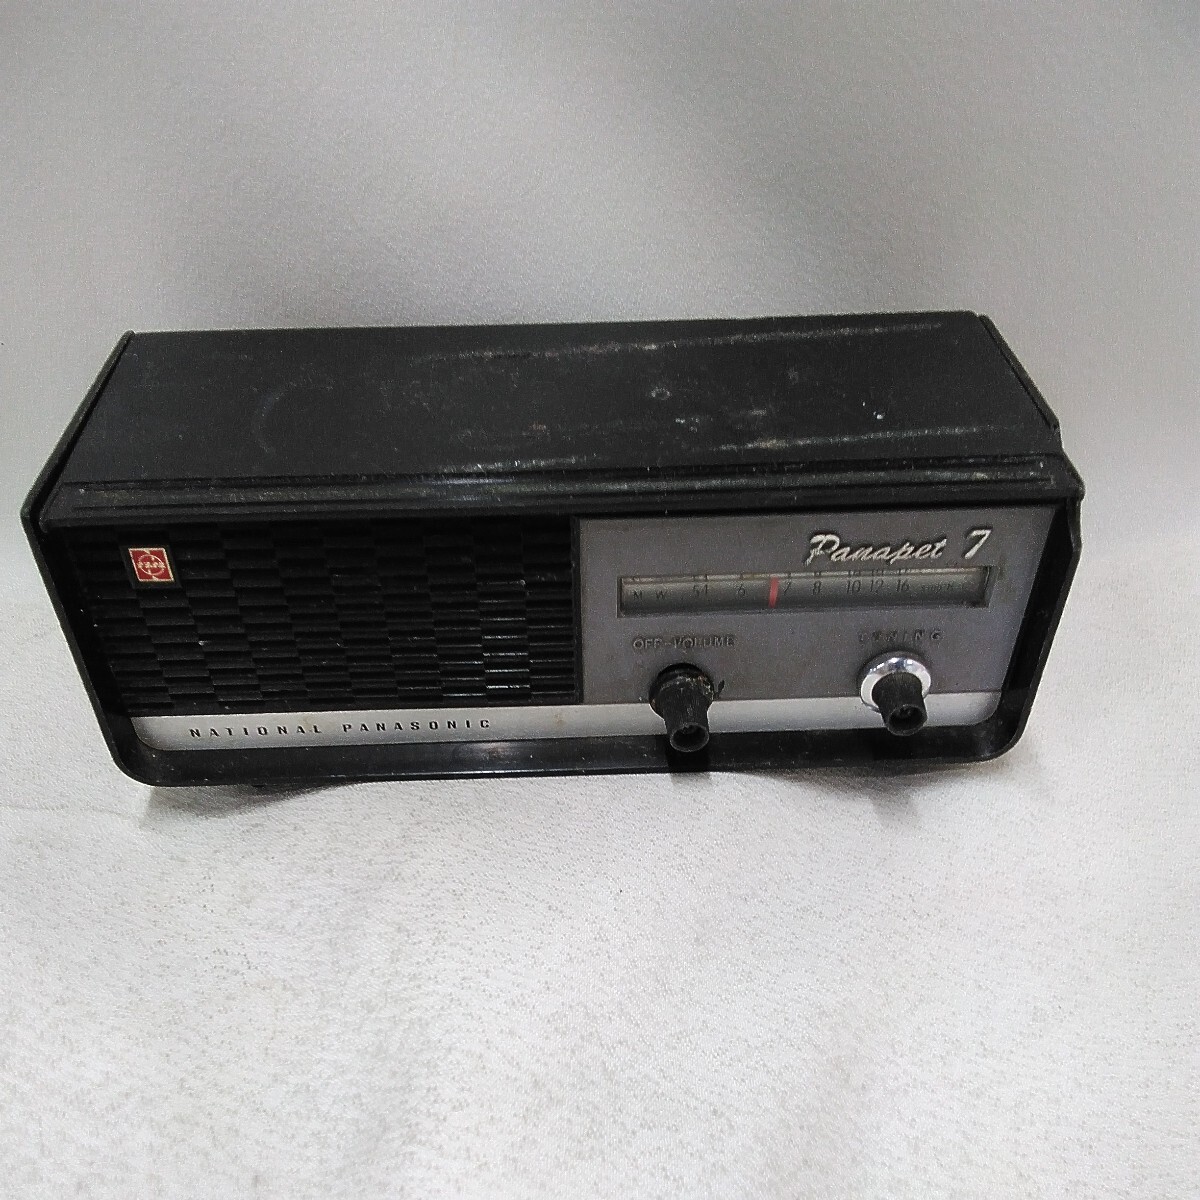 g_t U742 AM radio Showa Retro Panasonic ( National ) AM radio [ panama pet 7] crack, breaking equipped. breakdown equipped.] junk 